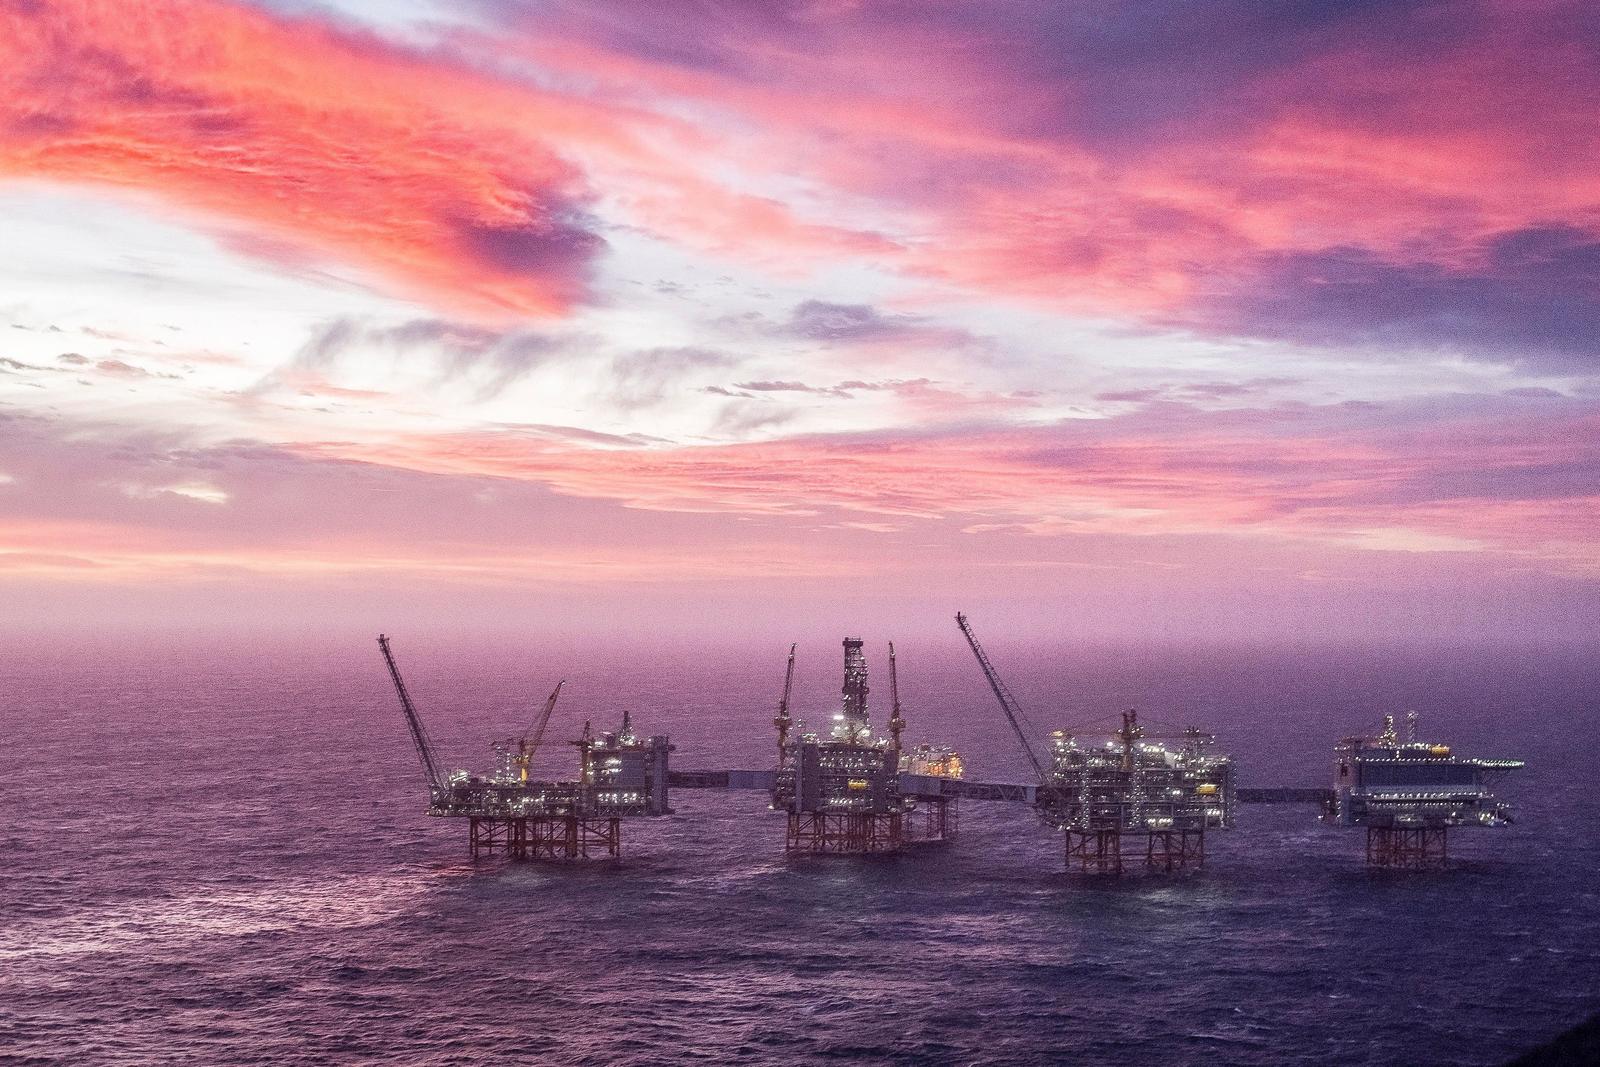 Norge åpnet offisielt et nytt oljefelt i Nordsjøen